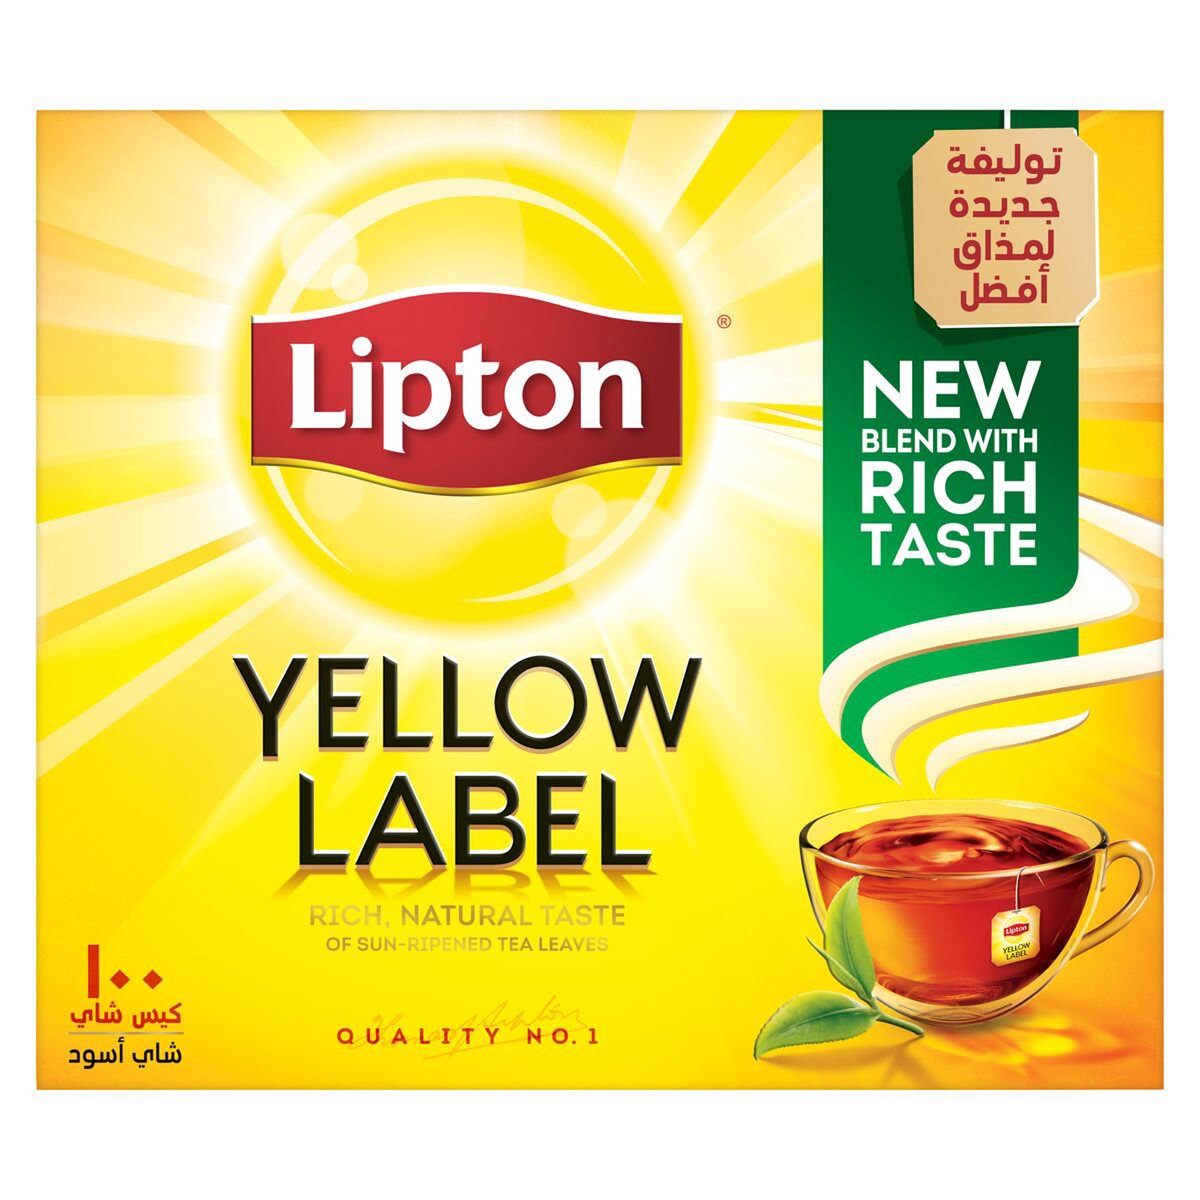 اشتري قم بشراء ليبتون شاي أسود بالعلامة الصفراء 100 كيس شاي Online at Best Price من الموقع - من لولو هايبر ماركت Tea Bag في مصر